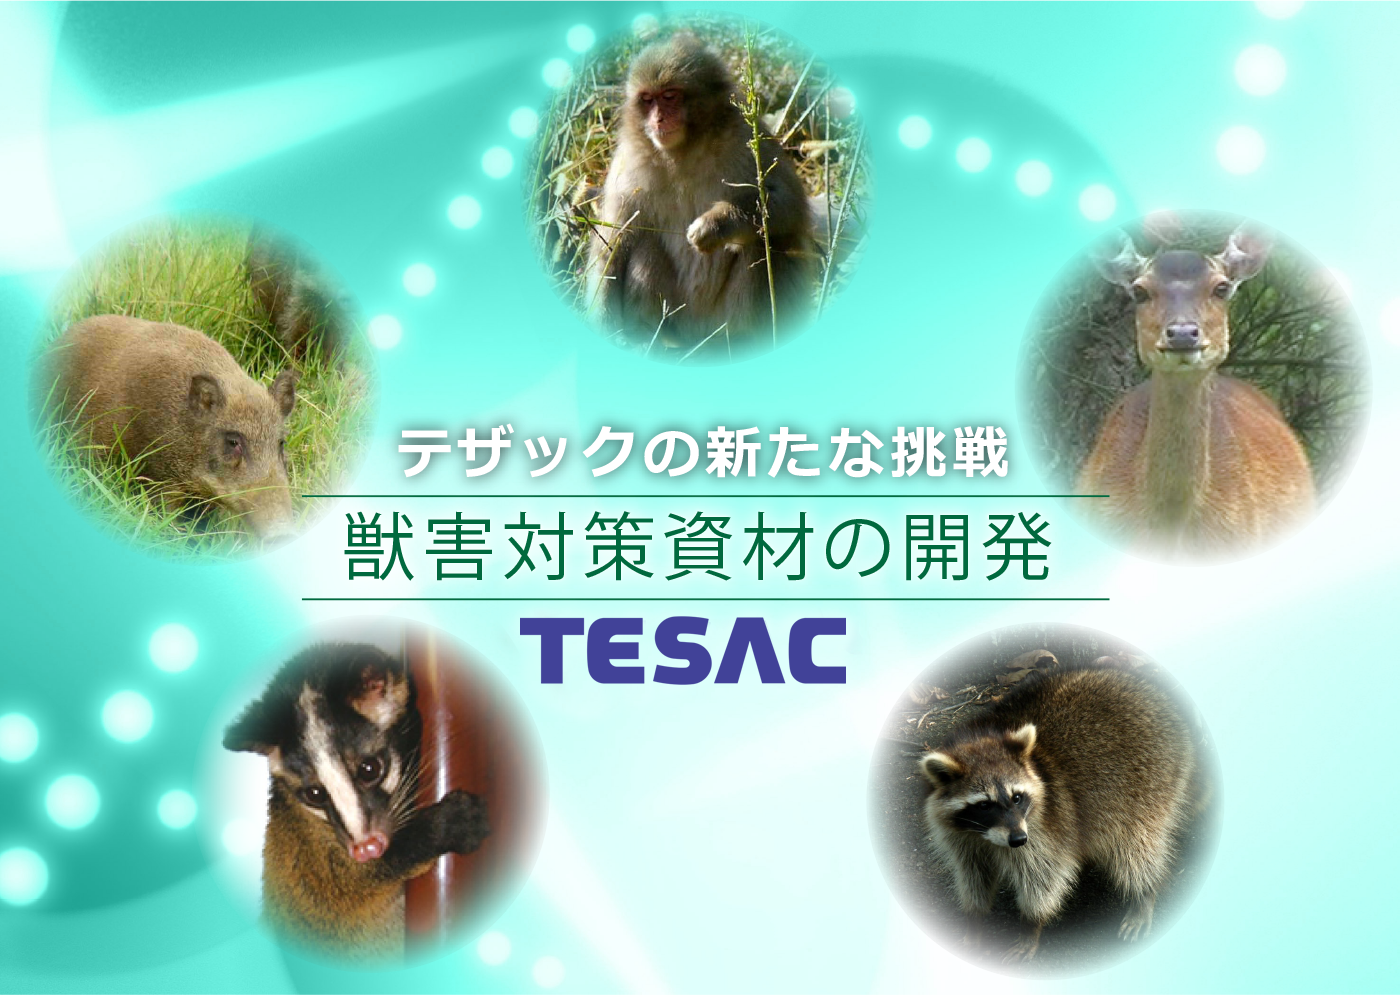 株式会社テザック「獣害対策資材の開発」